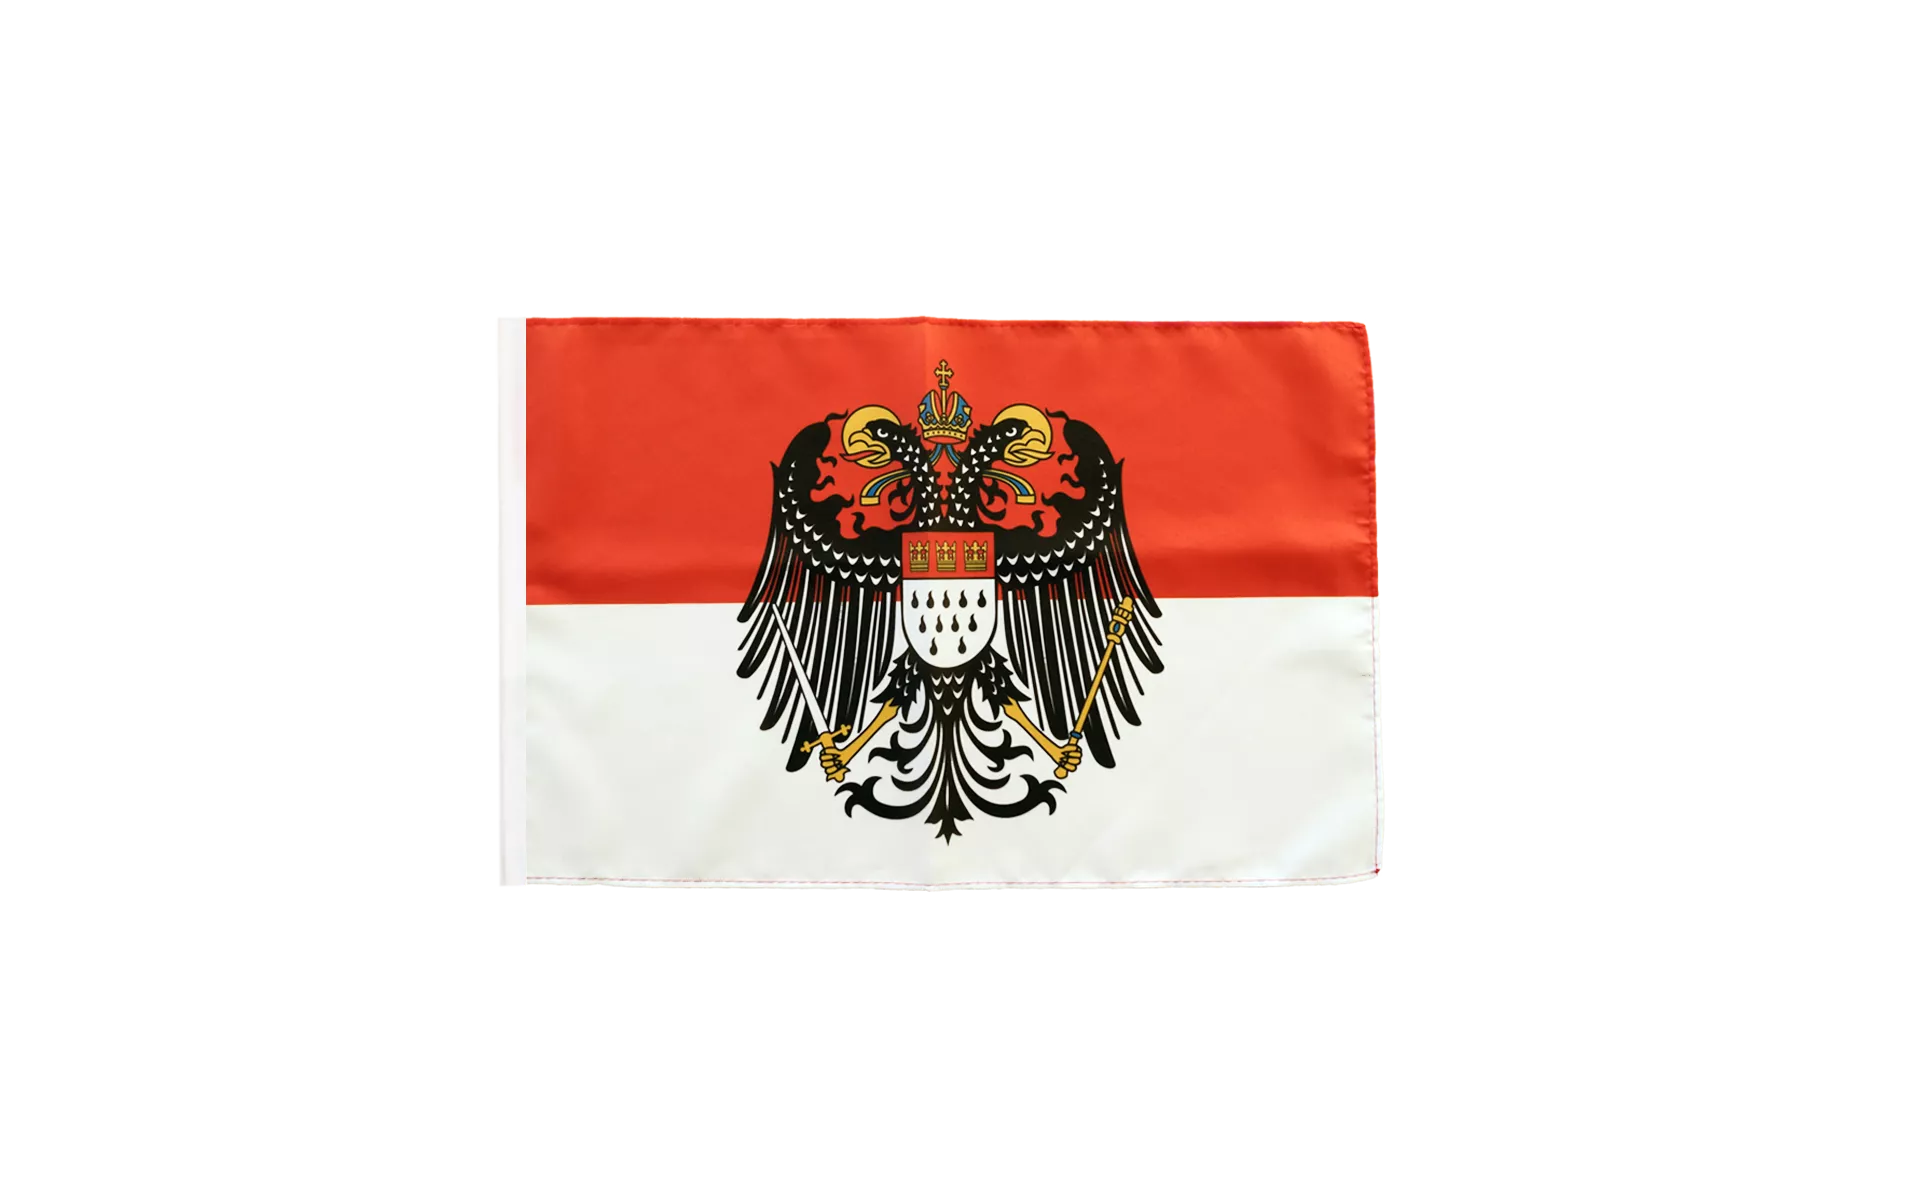 Fahne Flaggen Stadt KÖLN rot weiß mit Wappen 150x90cm TDShop24 